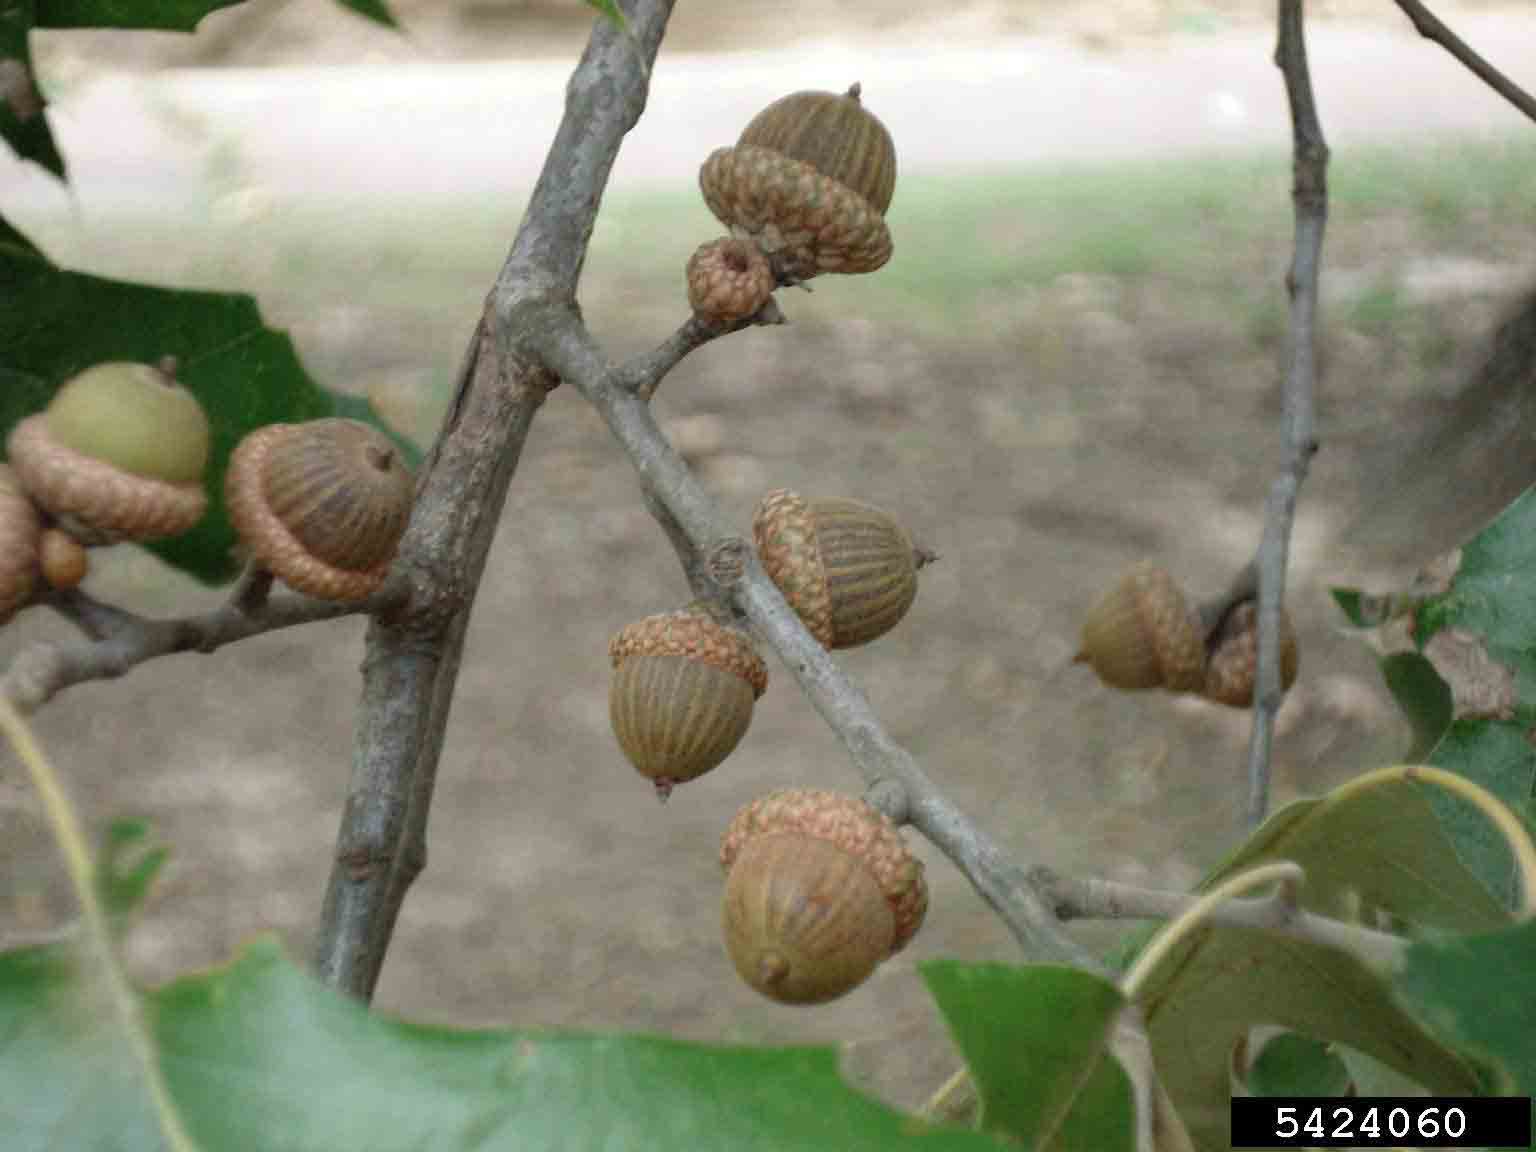 Cherrybark oak acorns